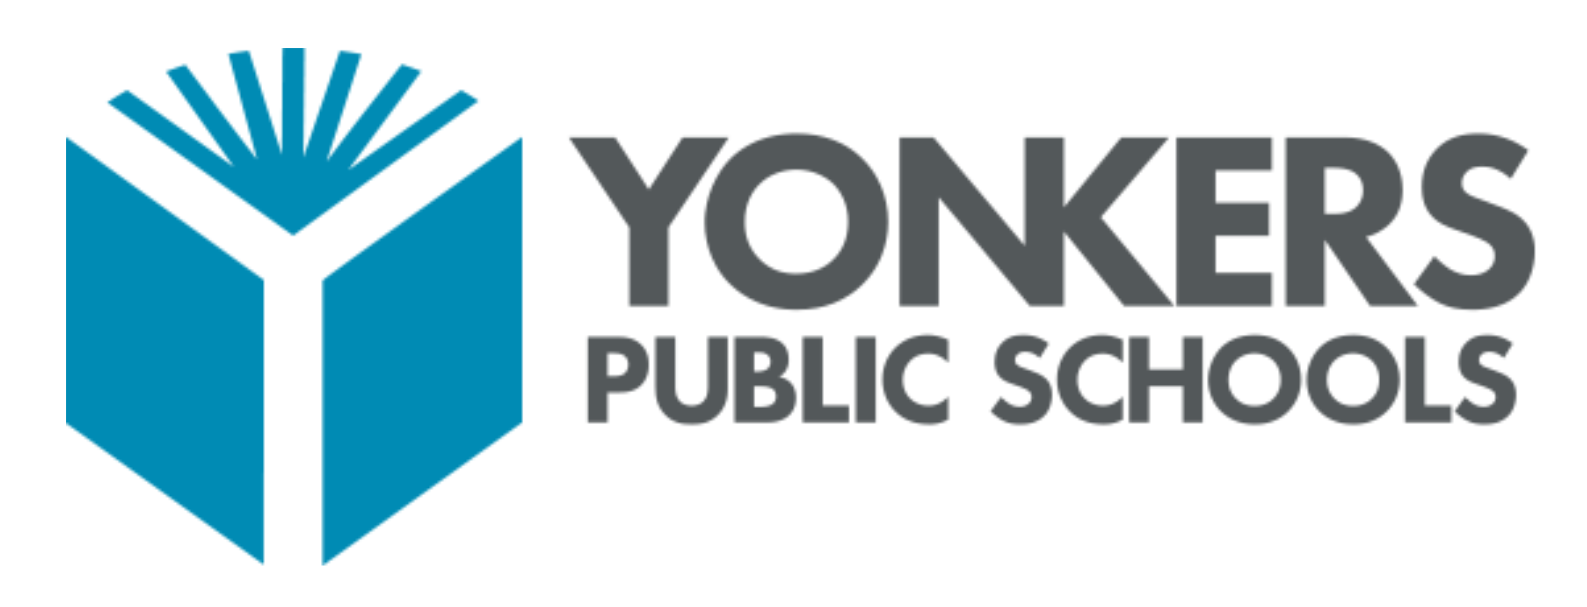 Yonkers_Public_School